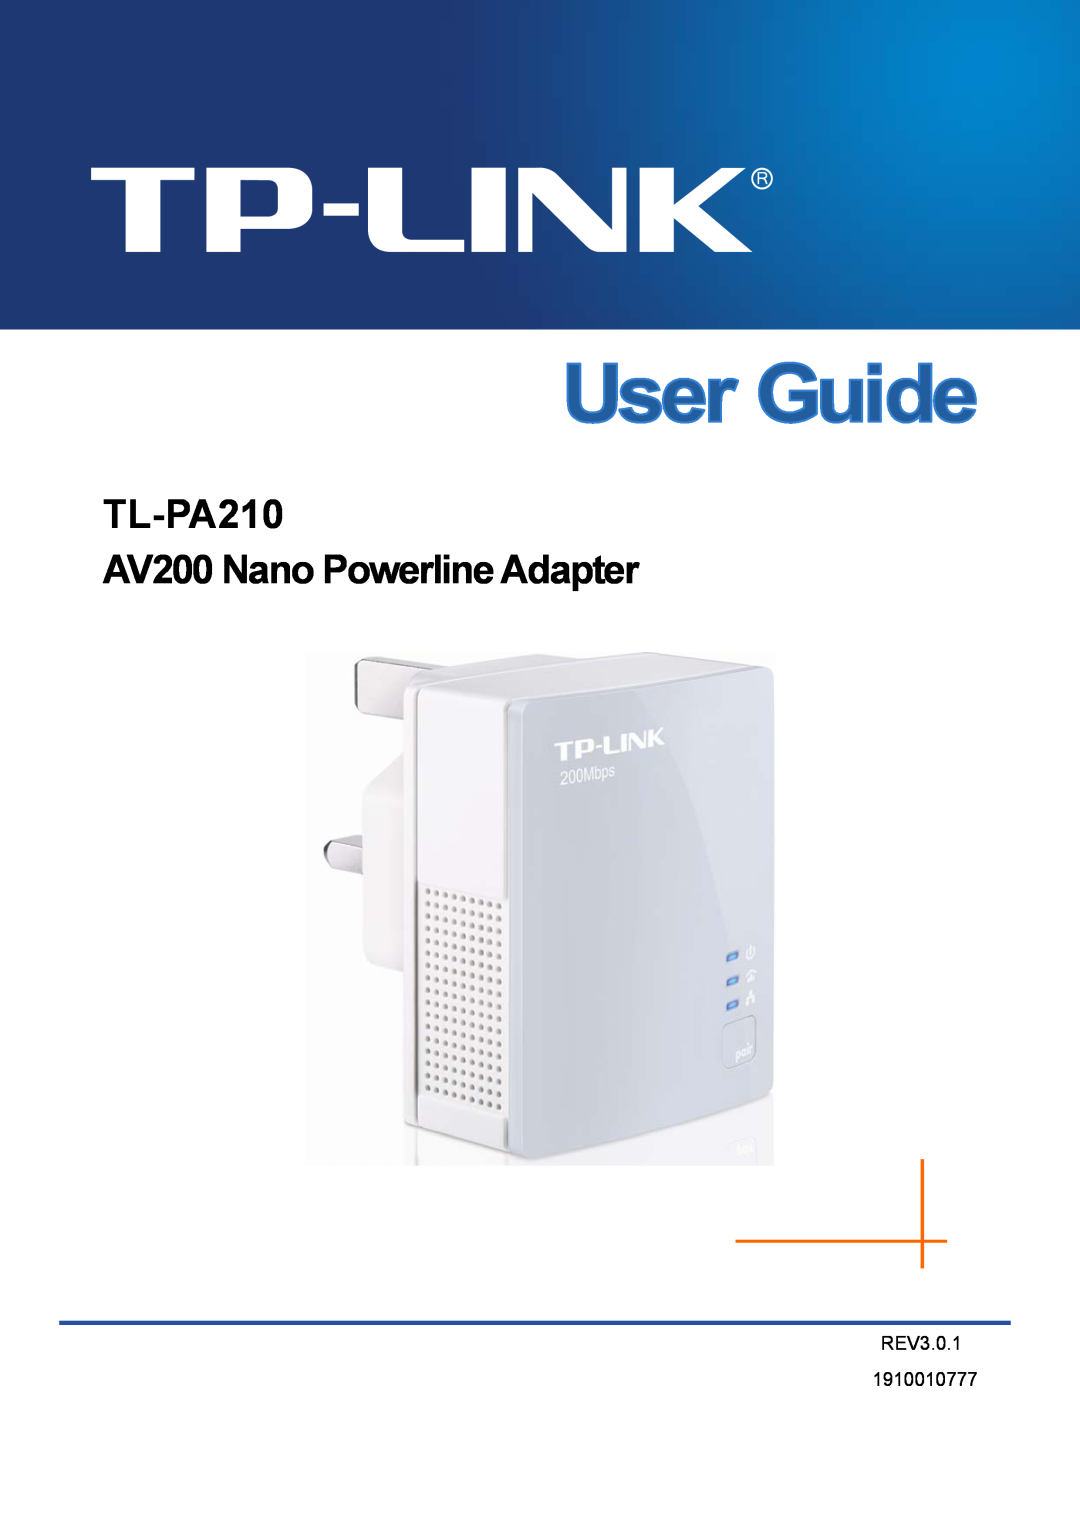 TP-Link manual TL-PA210 AV200 Nano Powerline Adapter, REV3.0.1 